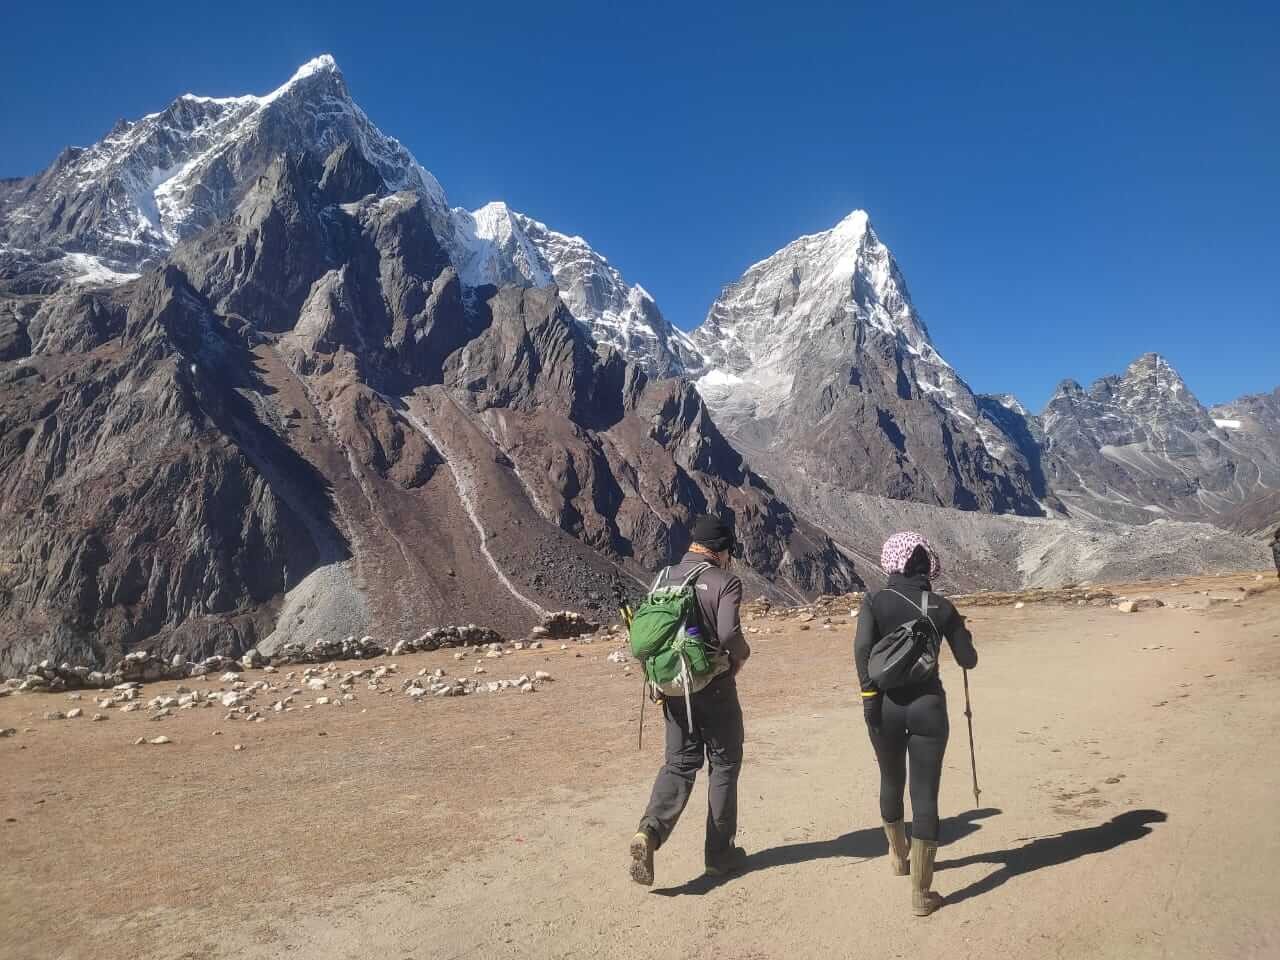 Everest Base Camp trek in April